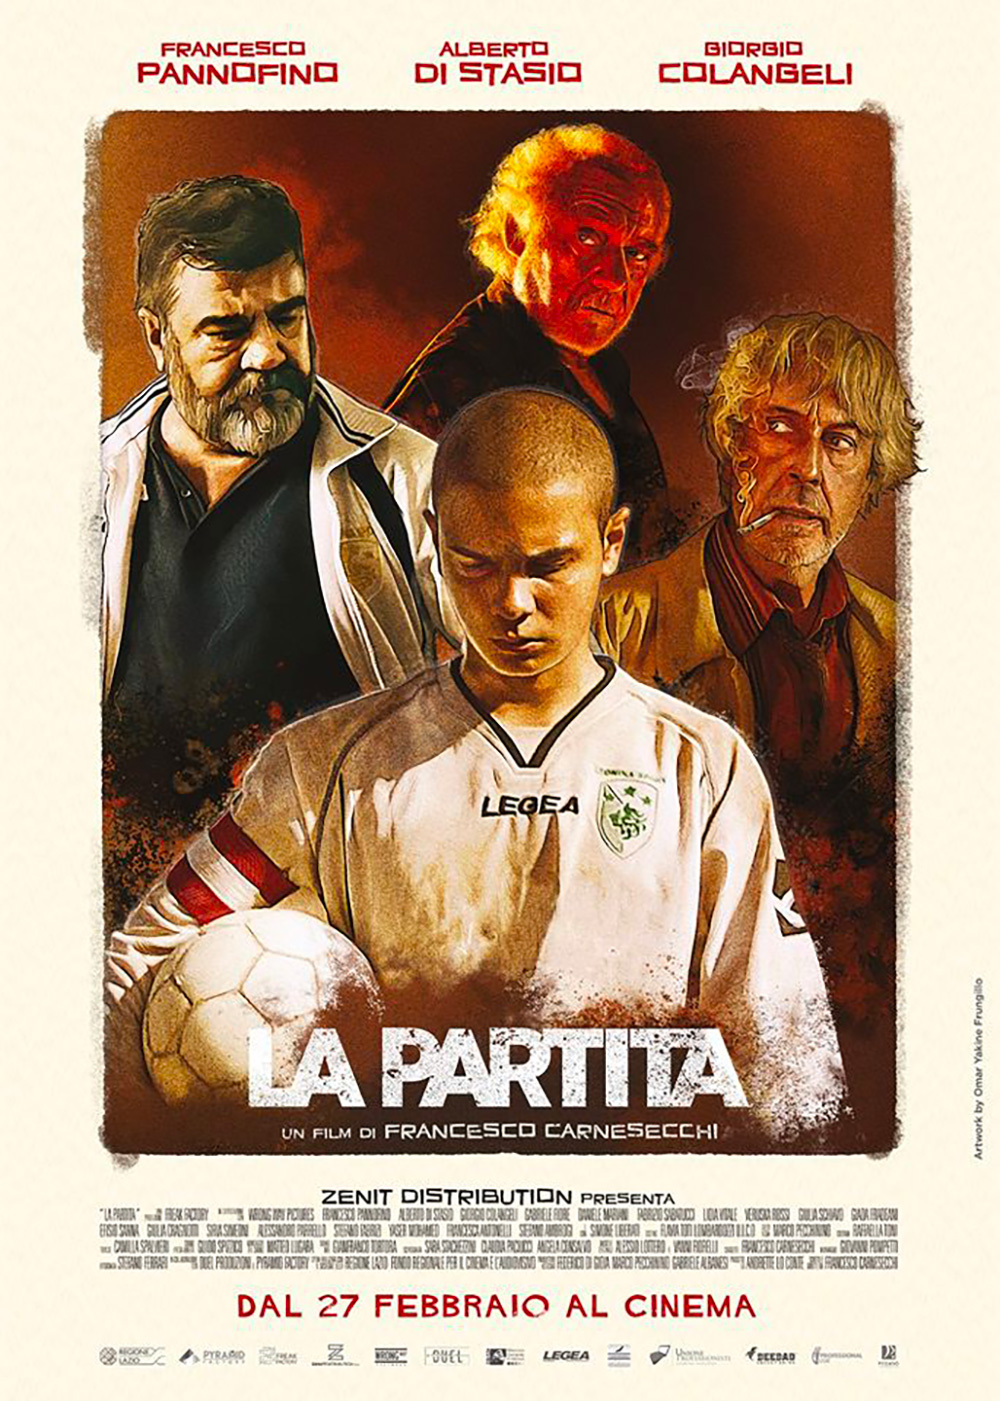  Dall'articolo: La partita, il poster ufficiale del film.